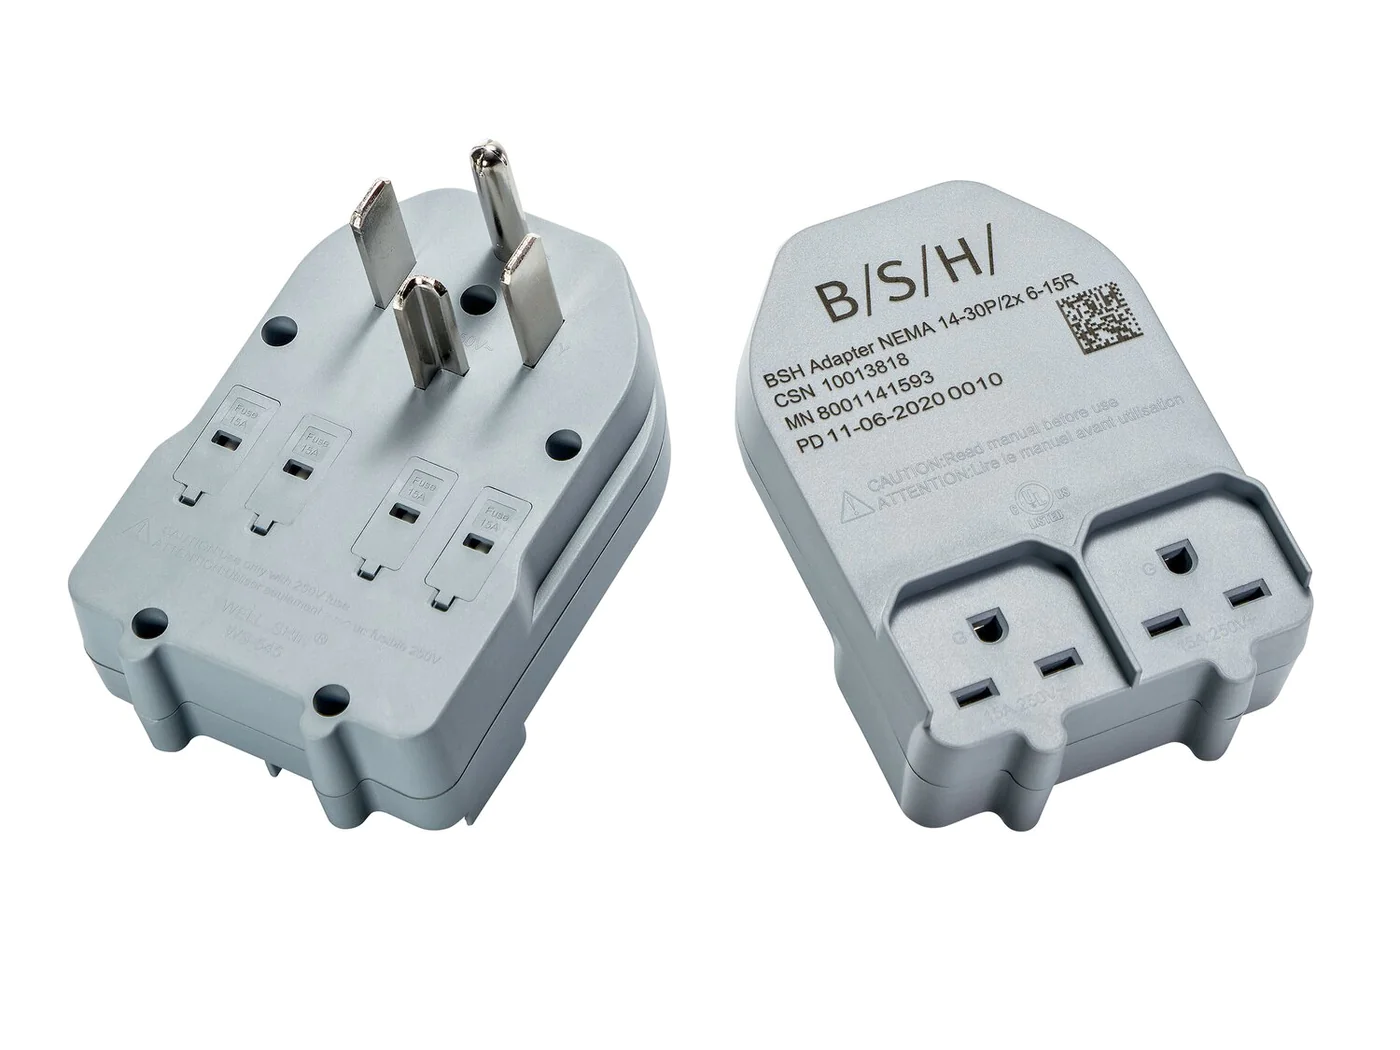 Bosch Washer/Dryer Power Adapter. Part #10013818